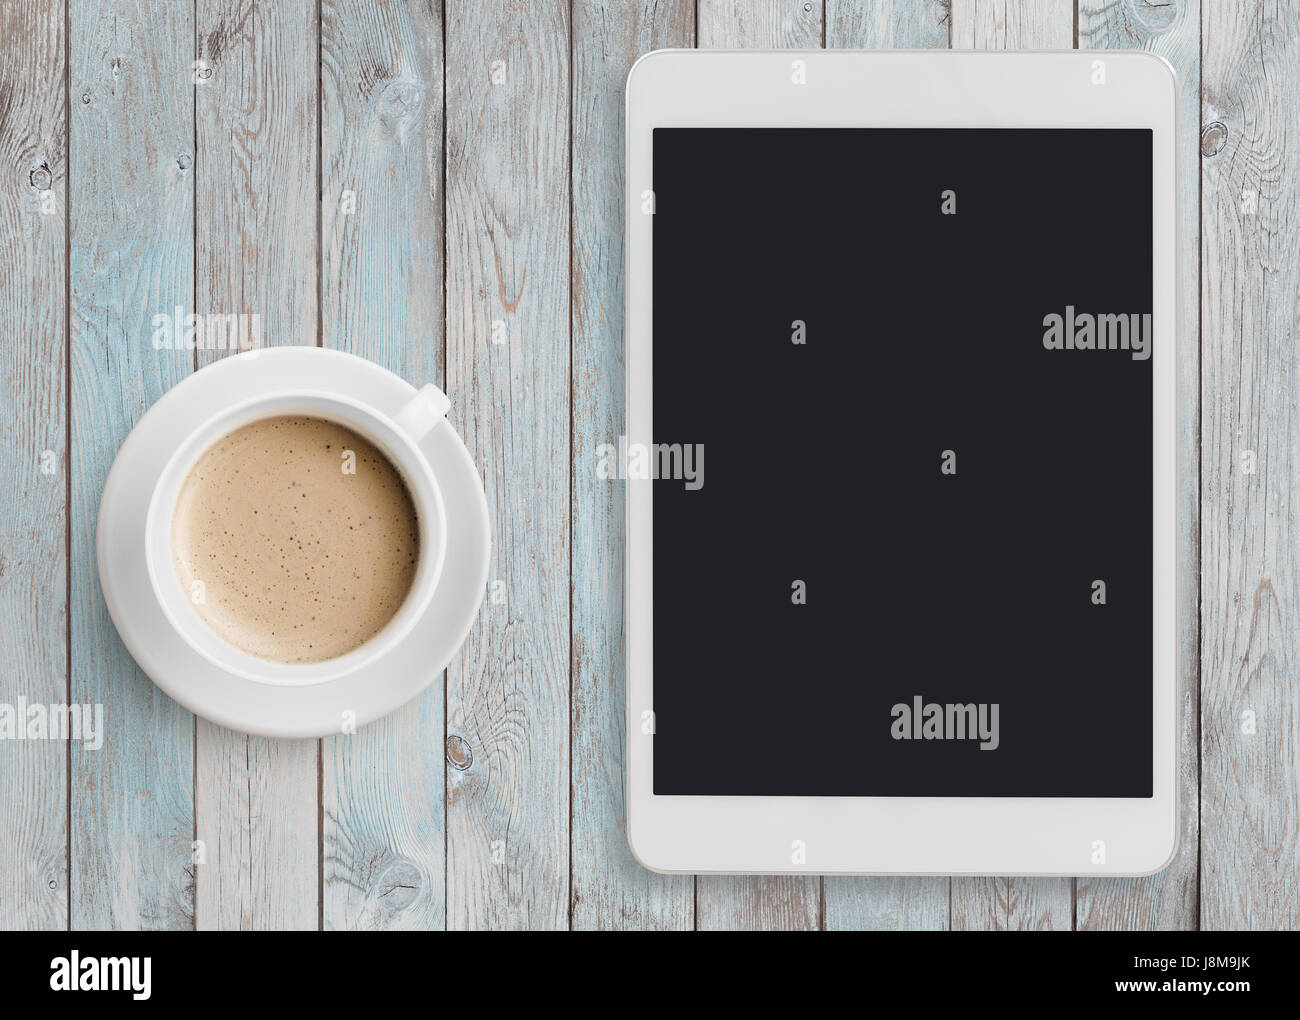 Tablet pc à ipad comme sur table avec Coffee cup Banque D'Images